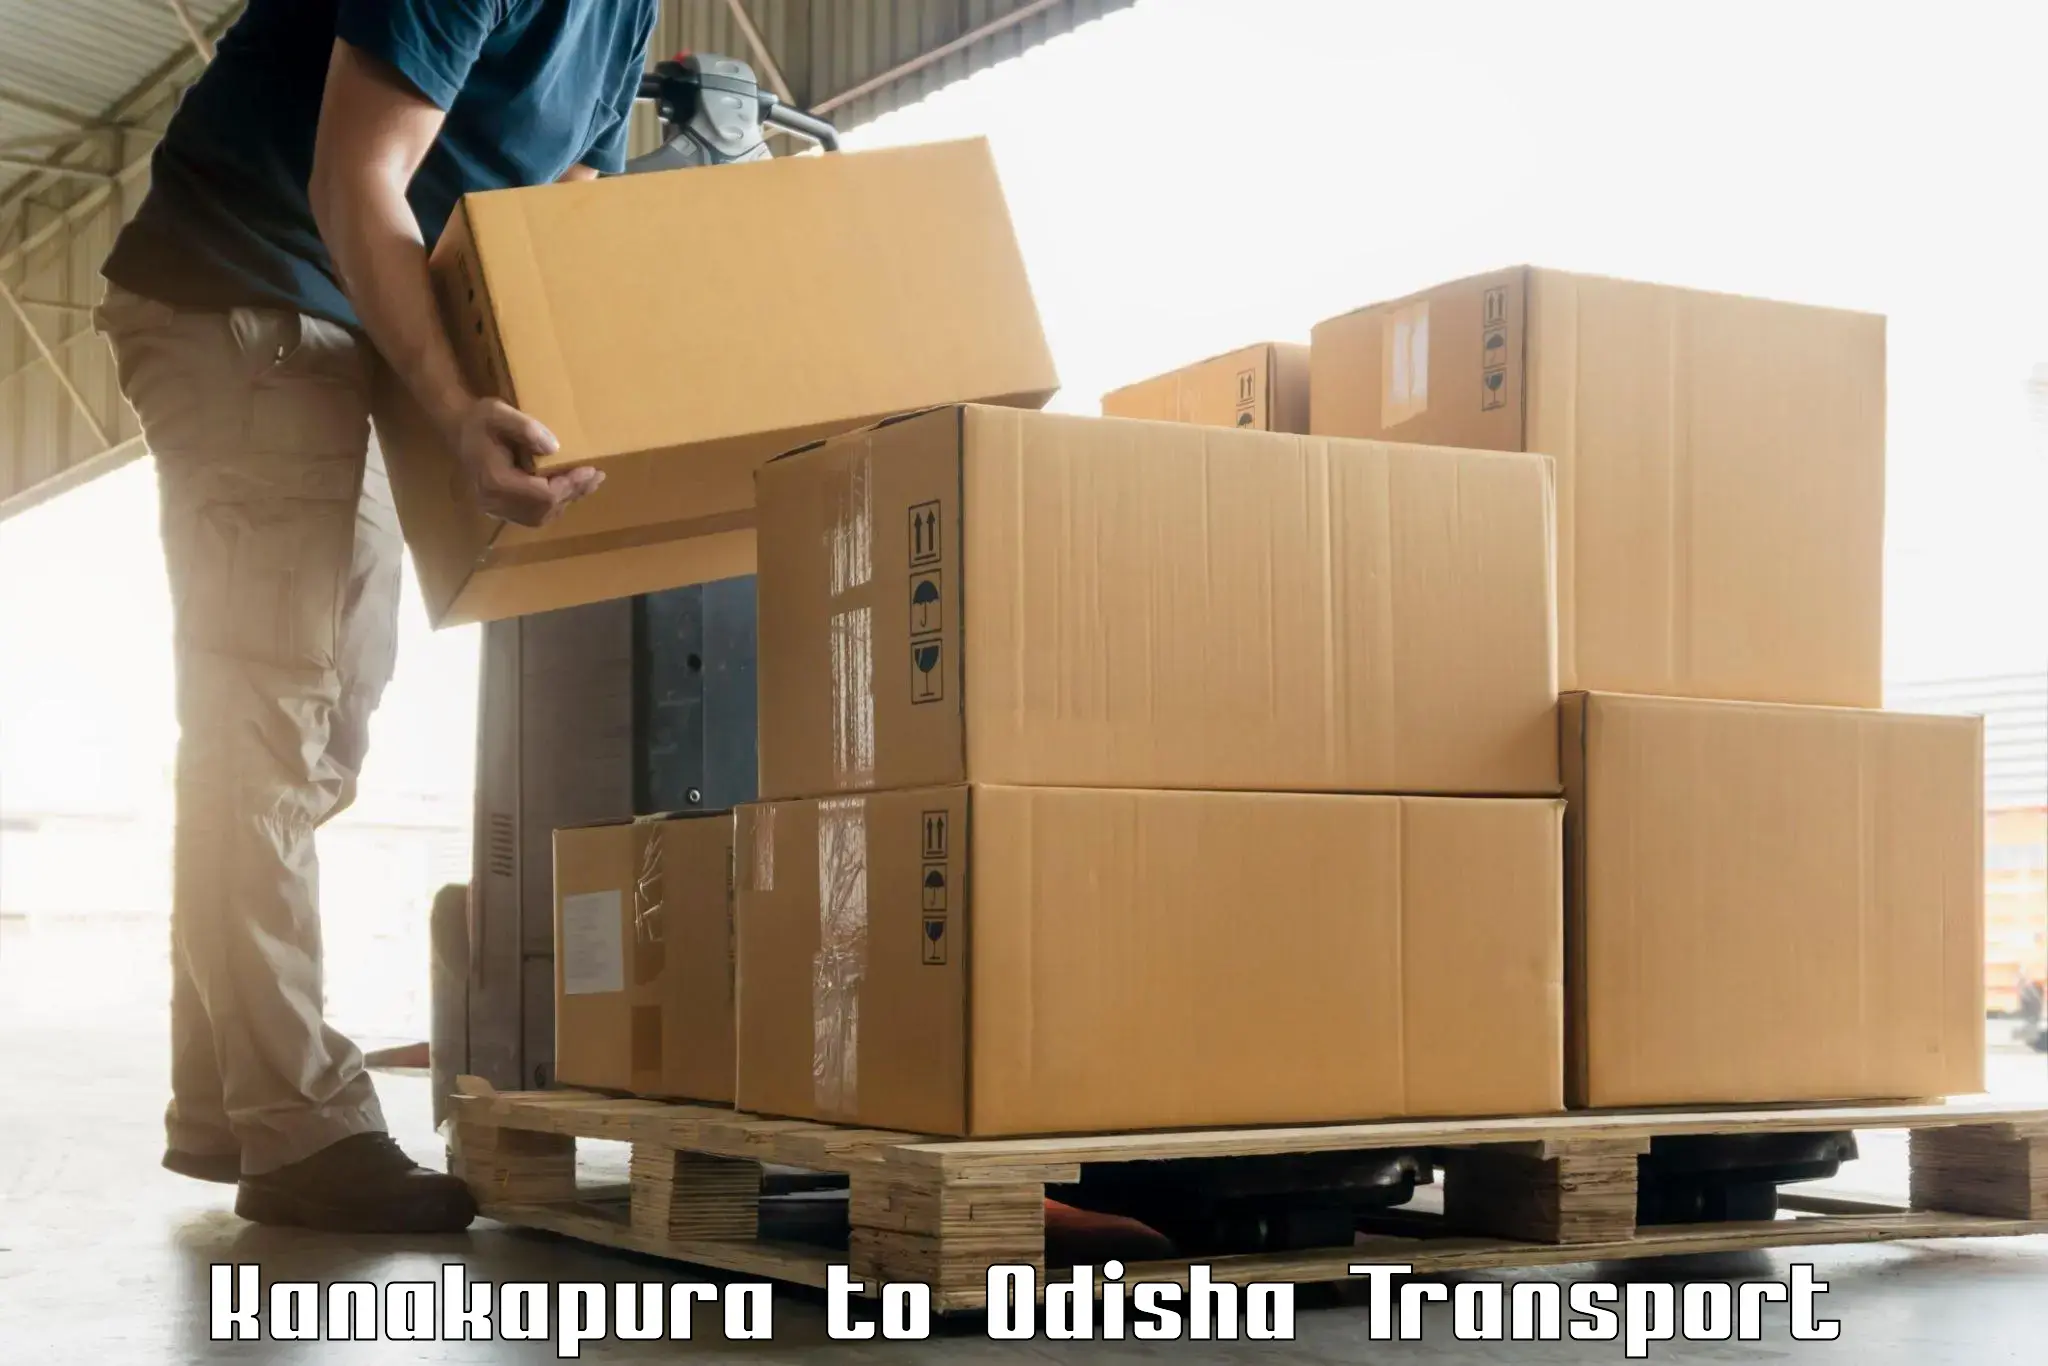 Scooty parcel Kanakapura to Odisha